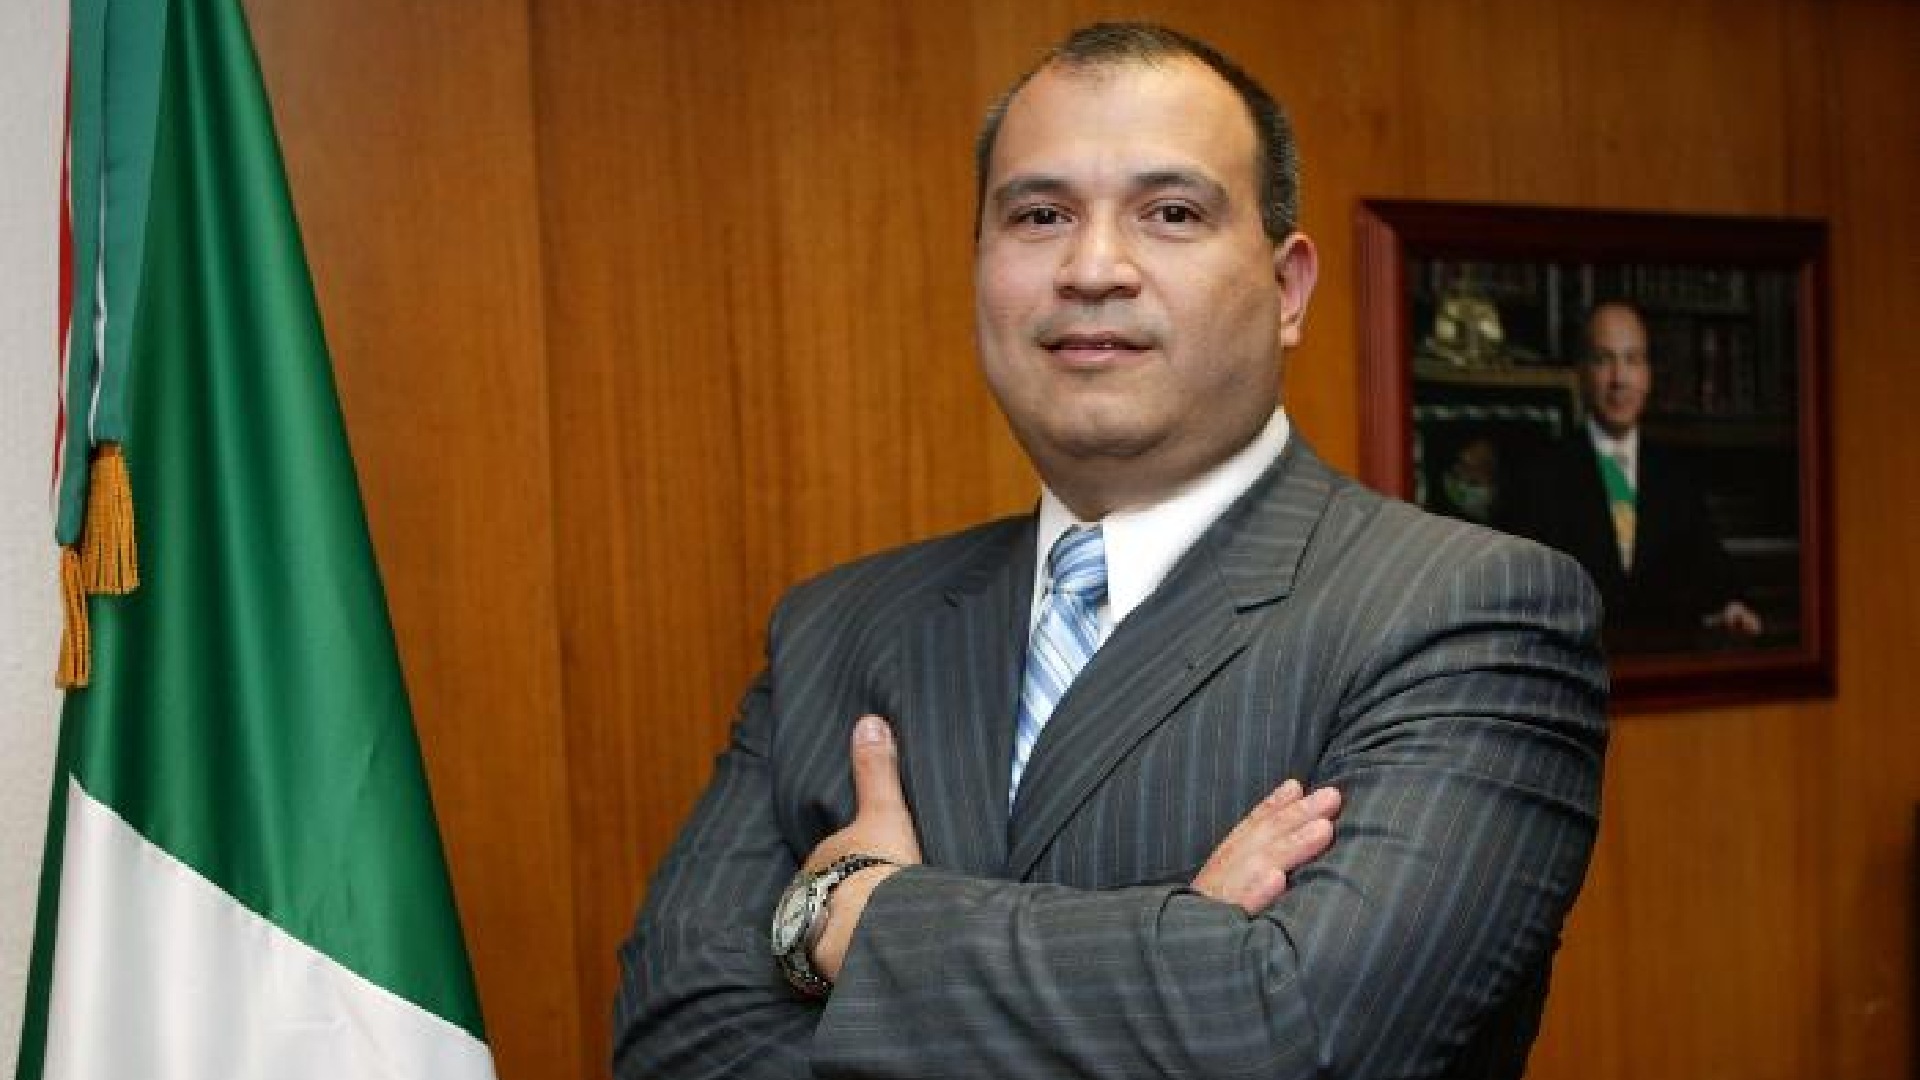 Carlos Alberto Treviño Medina, former director of Pemex (Photo: Cuartoscuro)